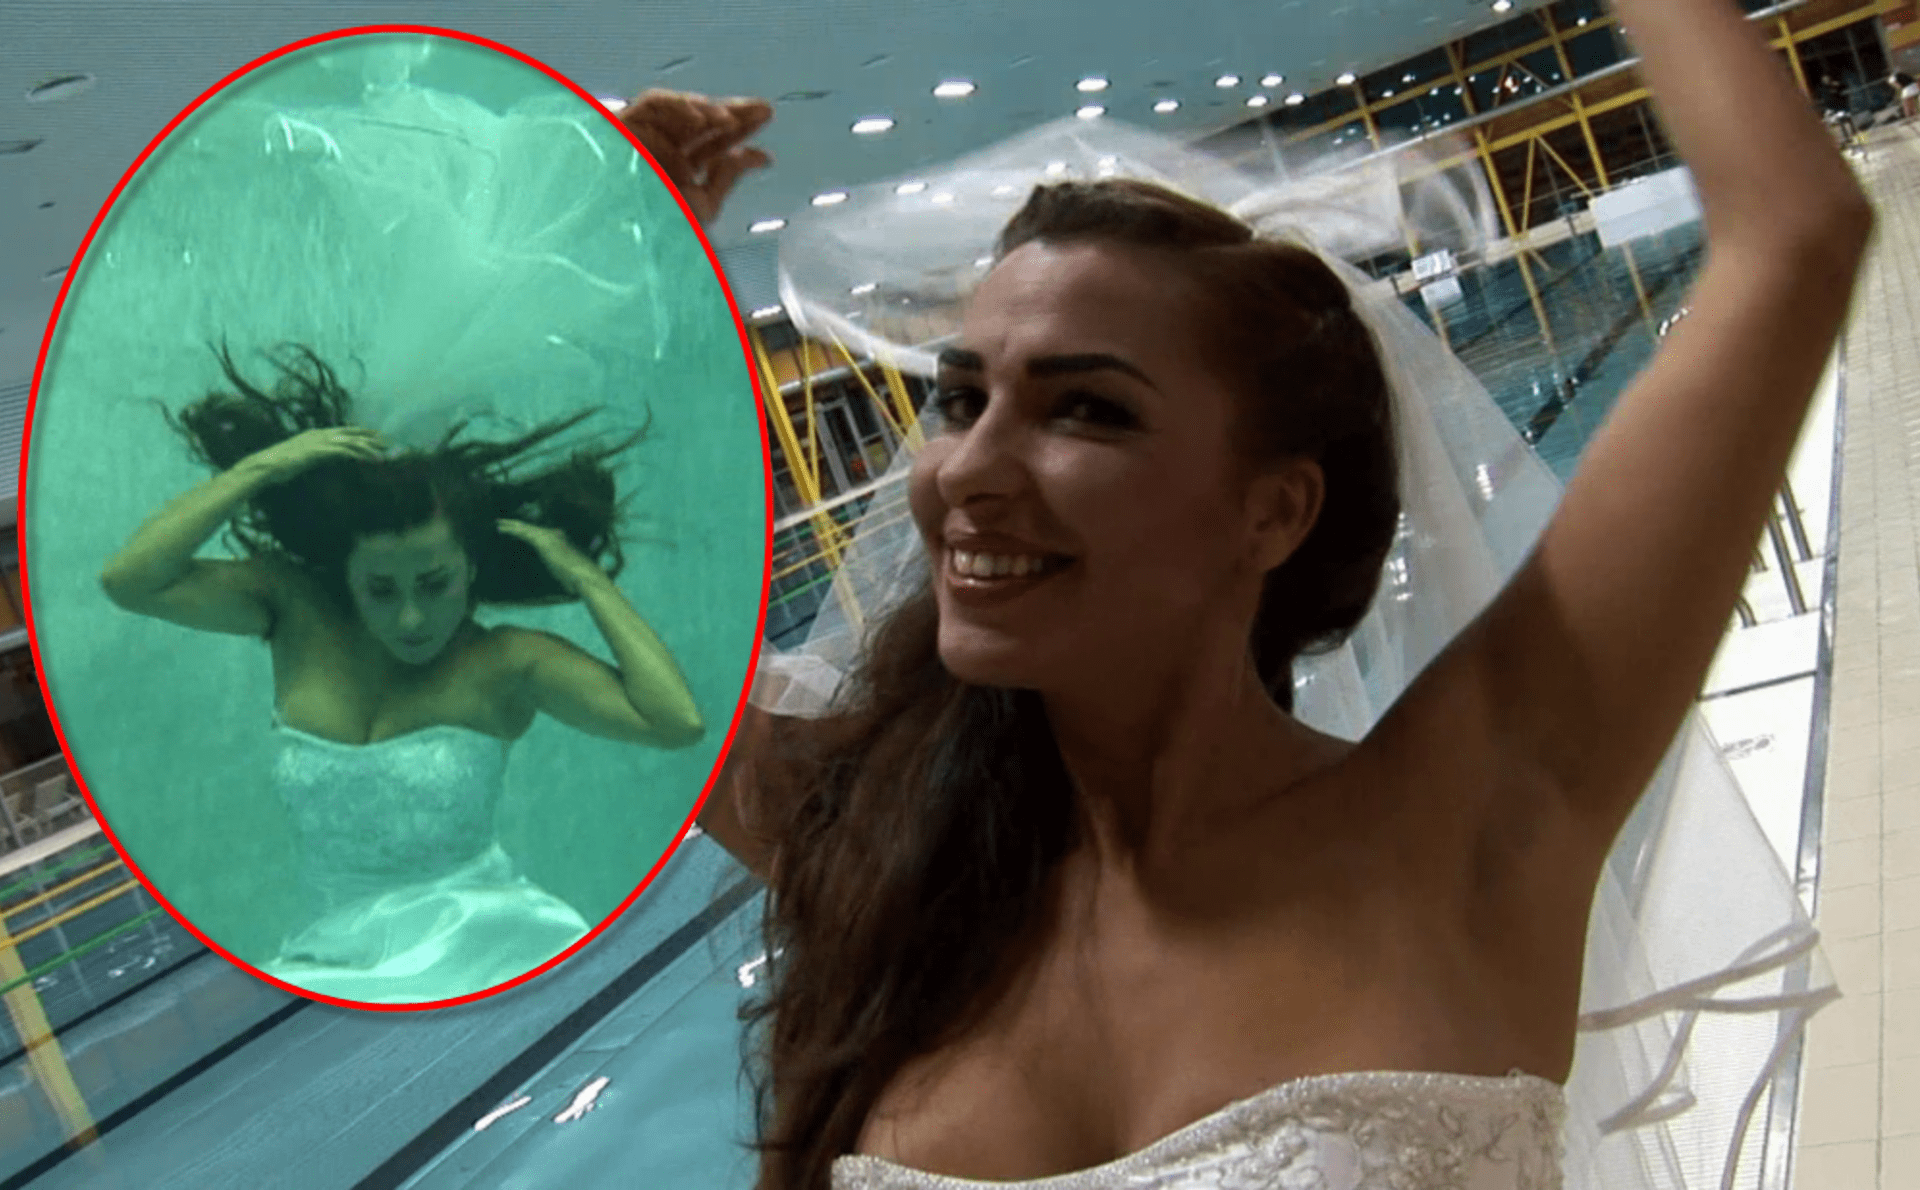 Anife Vyskočilová hupla ve svatebních šatech do bazénu